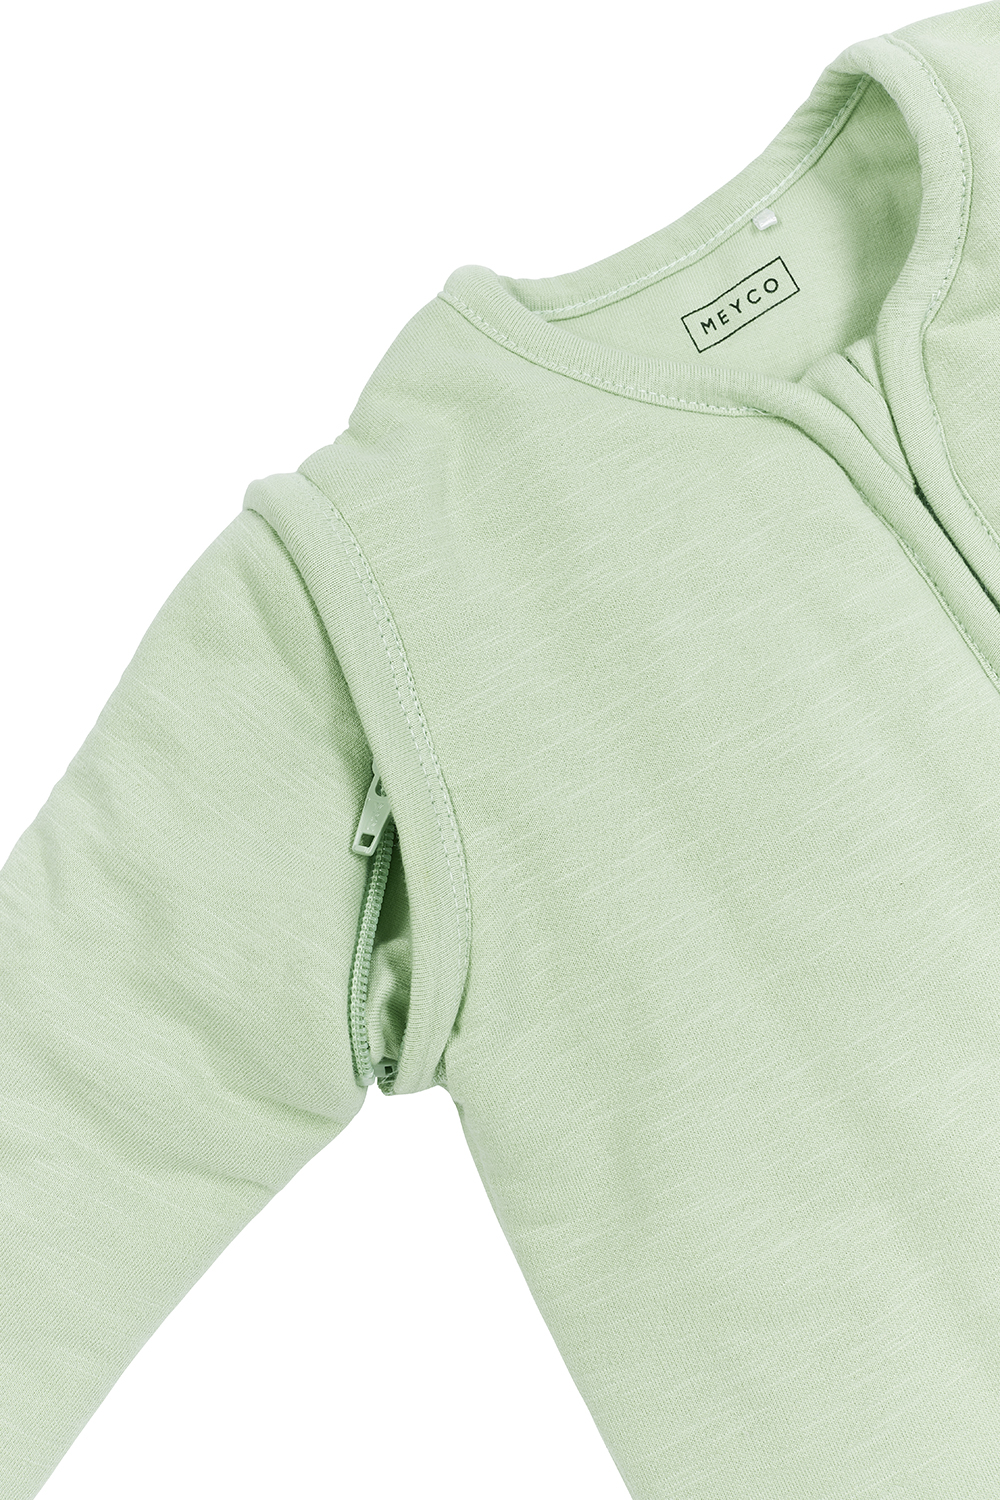 Babyschlafsack mit abnehmbaren Ärmeln Slub - soft green - 110cm